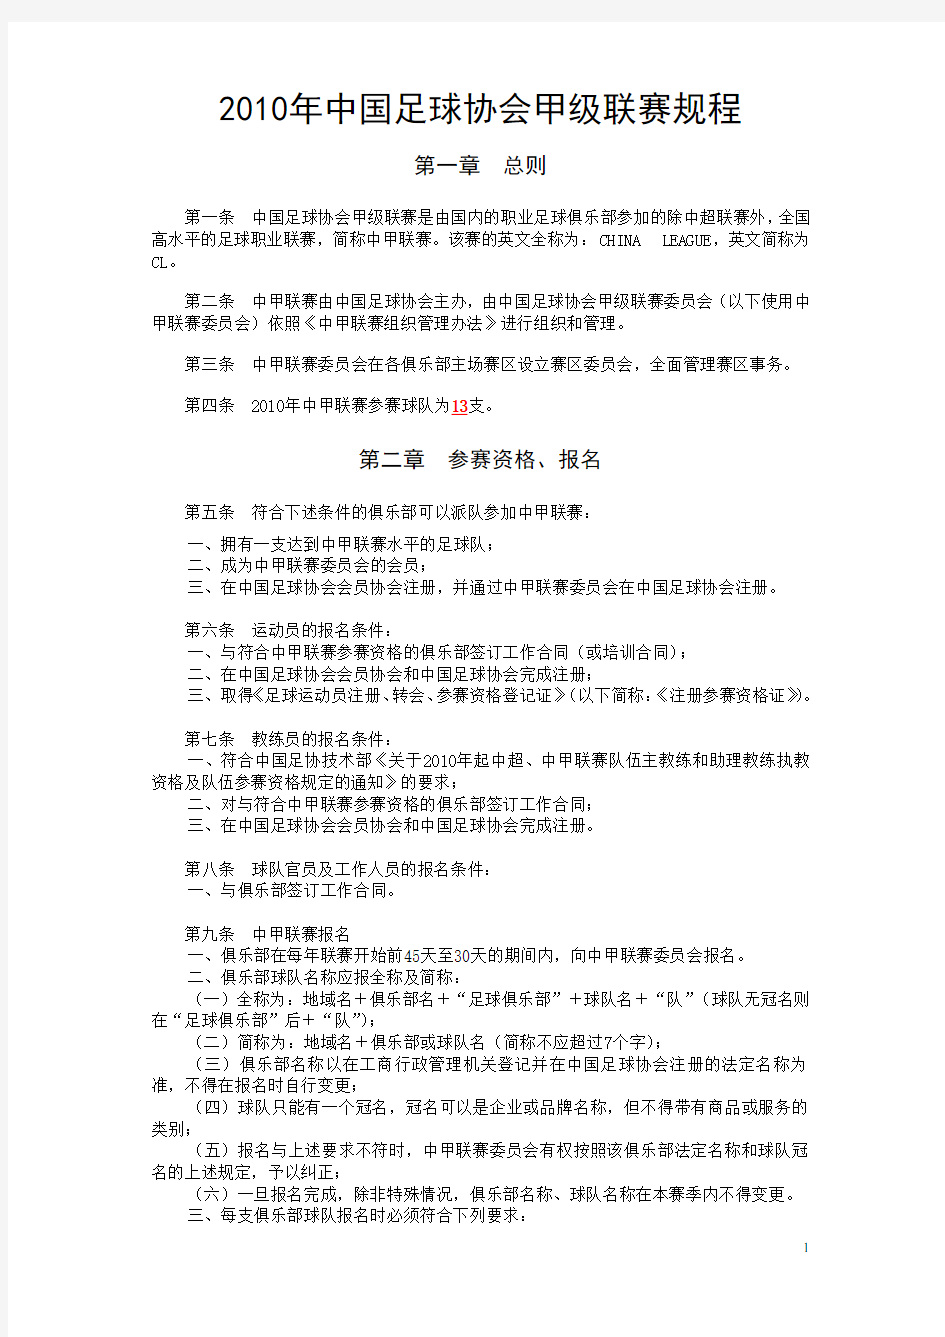 中国足球协会甲级联赛规程(定稿)